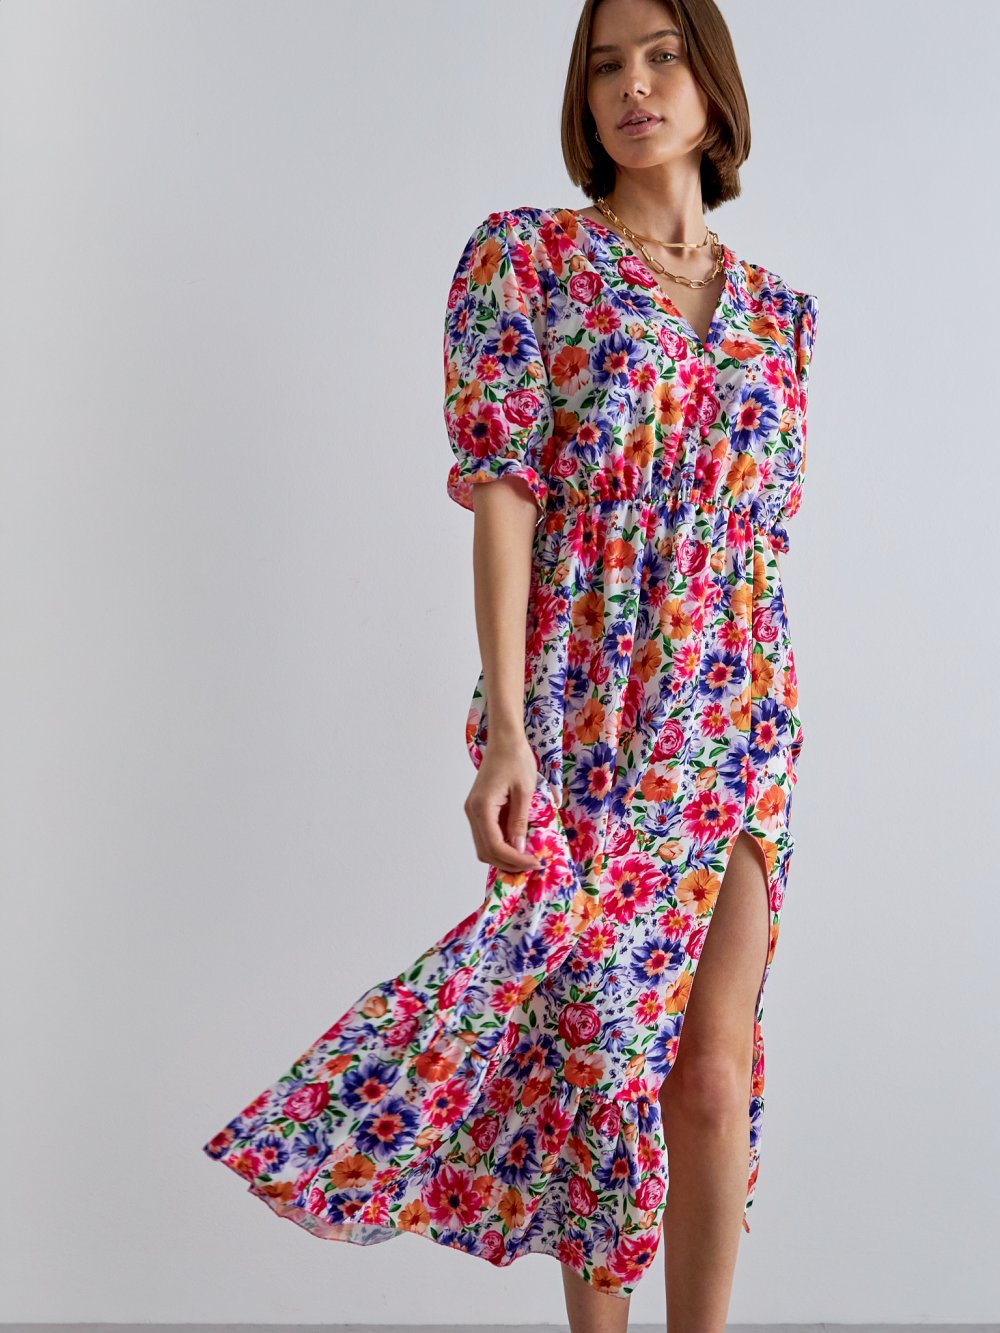 Farebné kvetované šaty Pyper